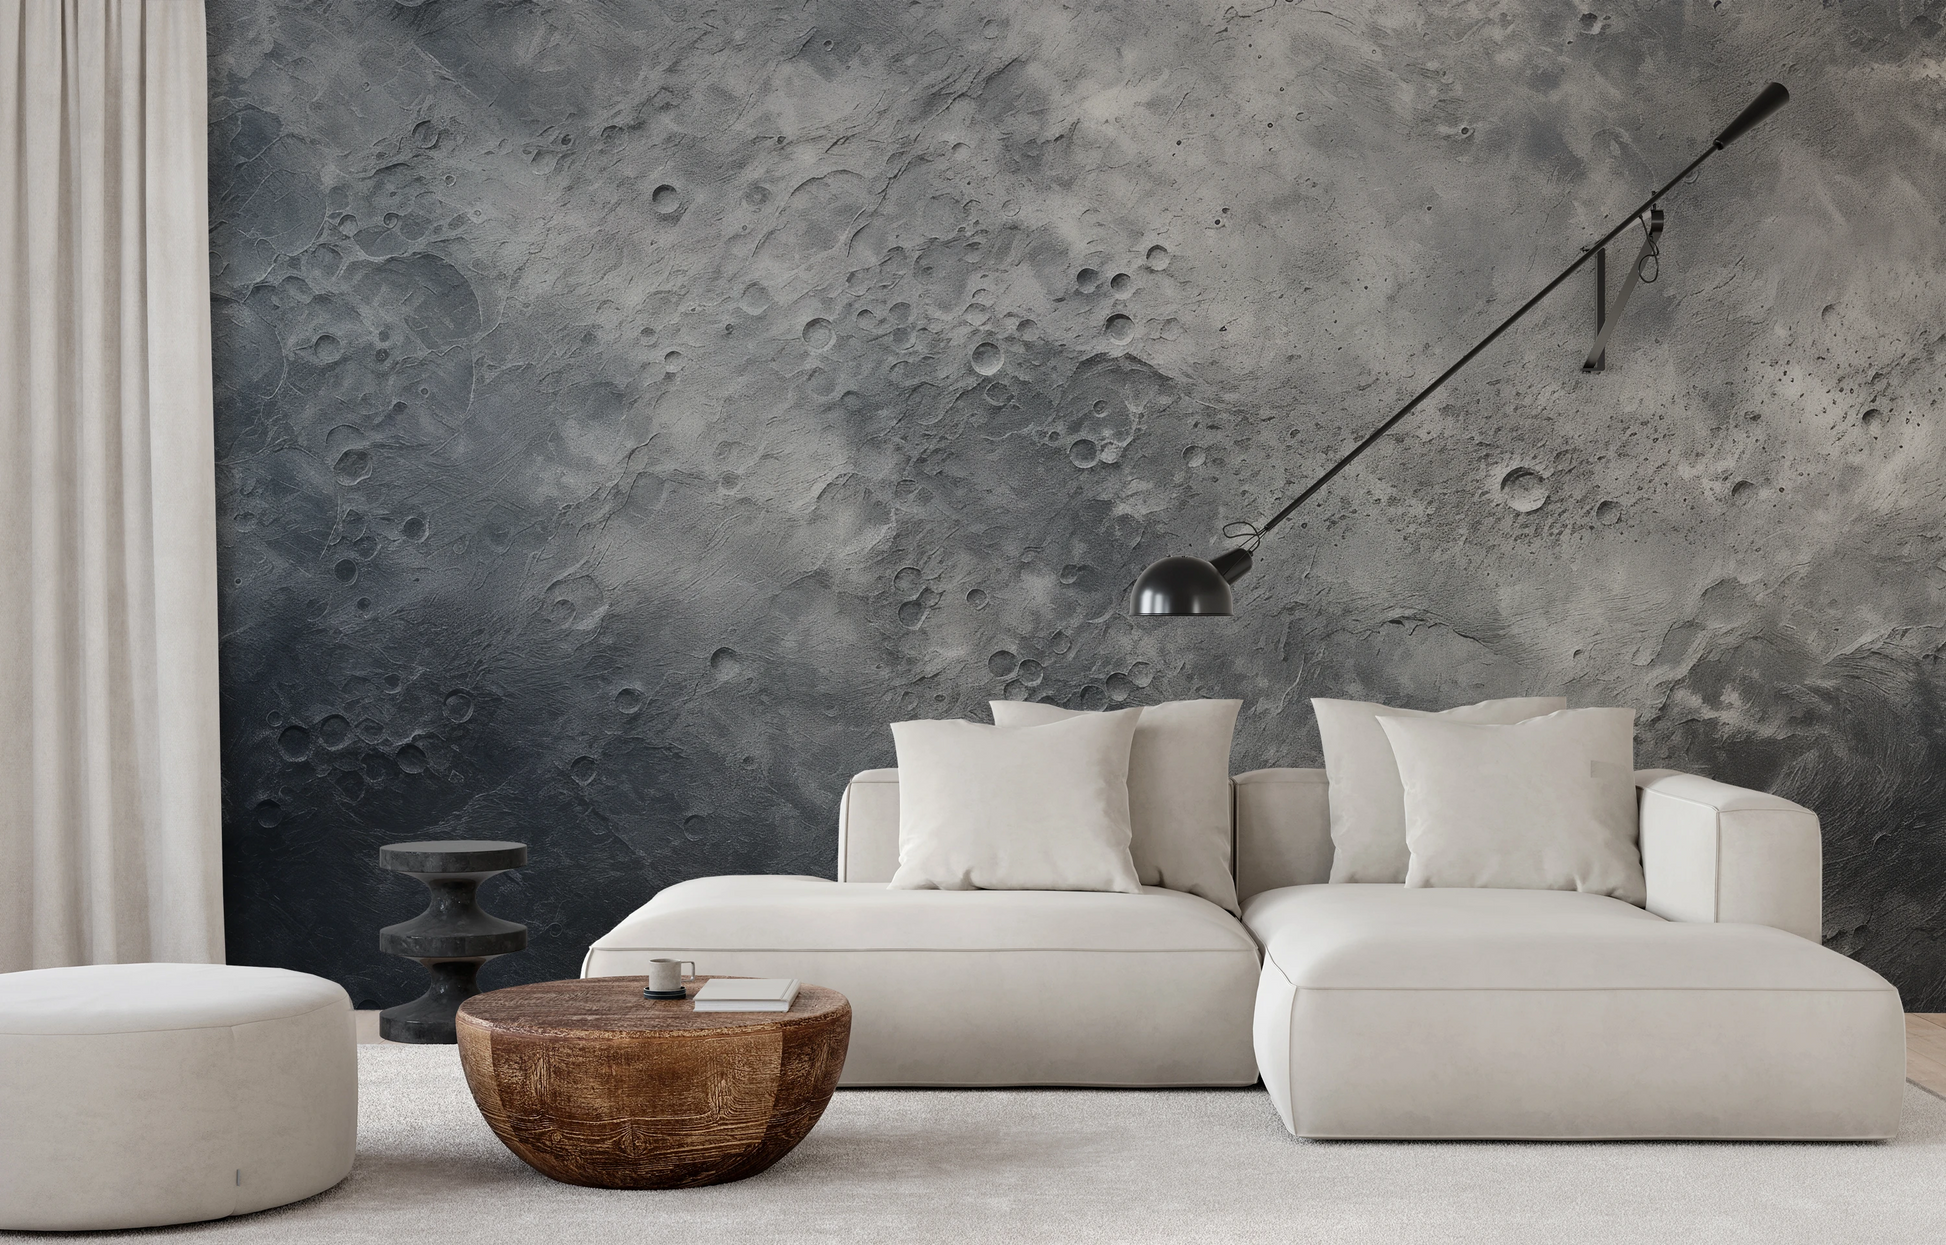 Wzór fototapety o nazwie Moon's Geography pokazanej w kontekście pomieszczenia.